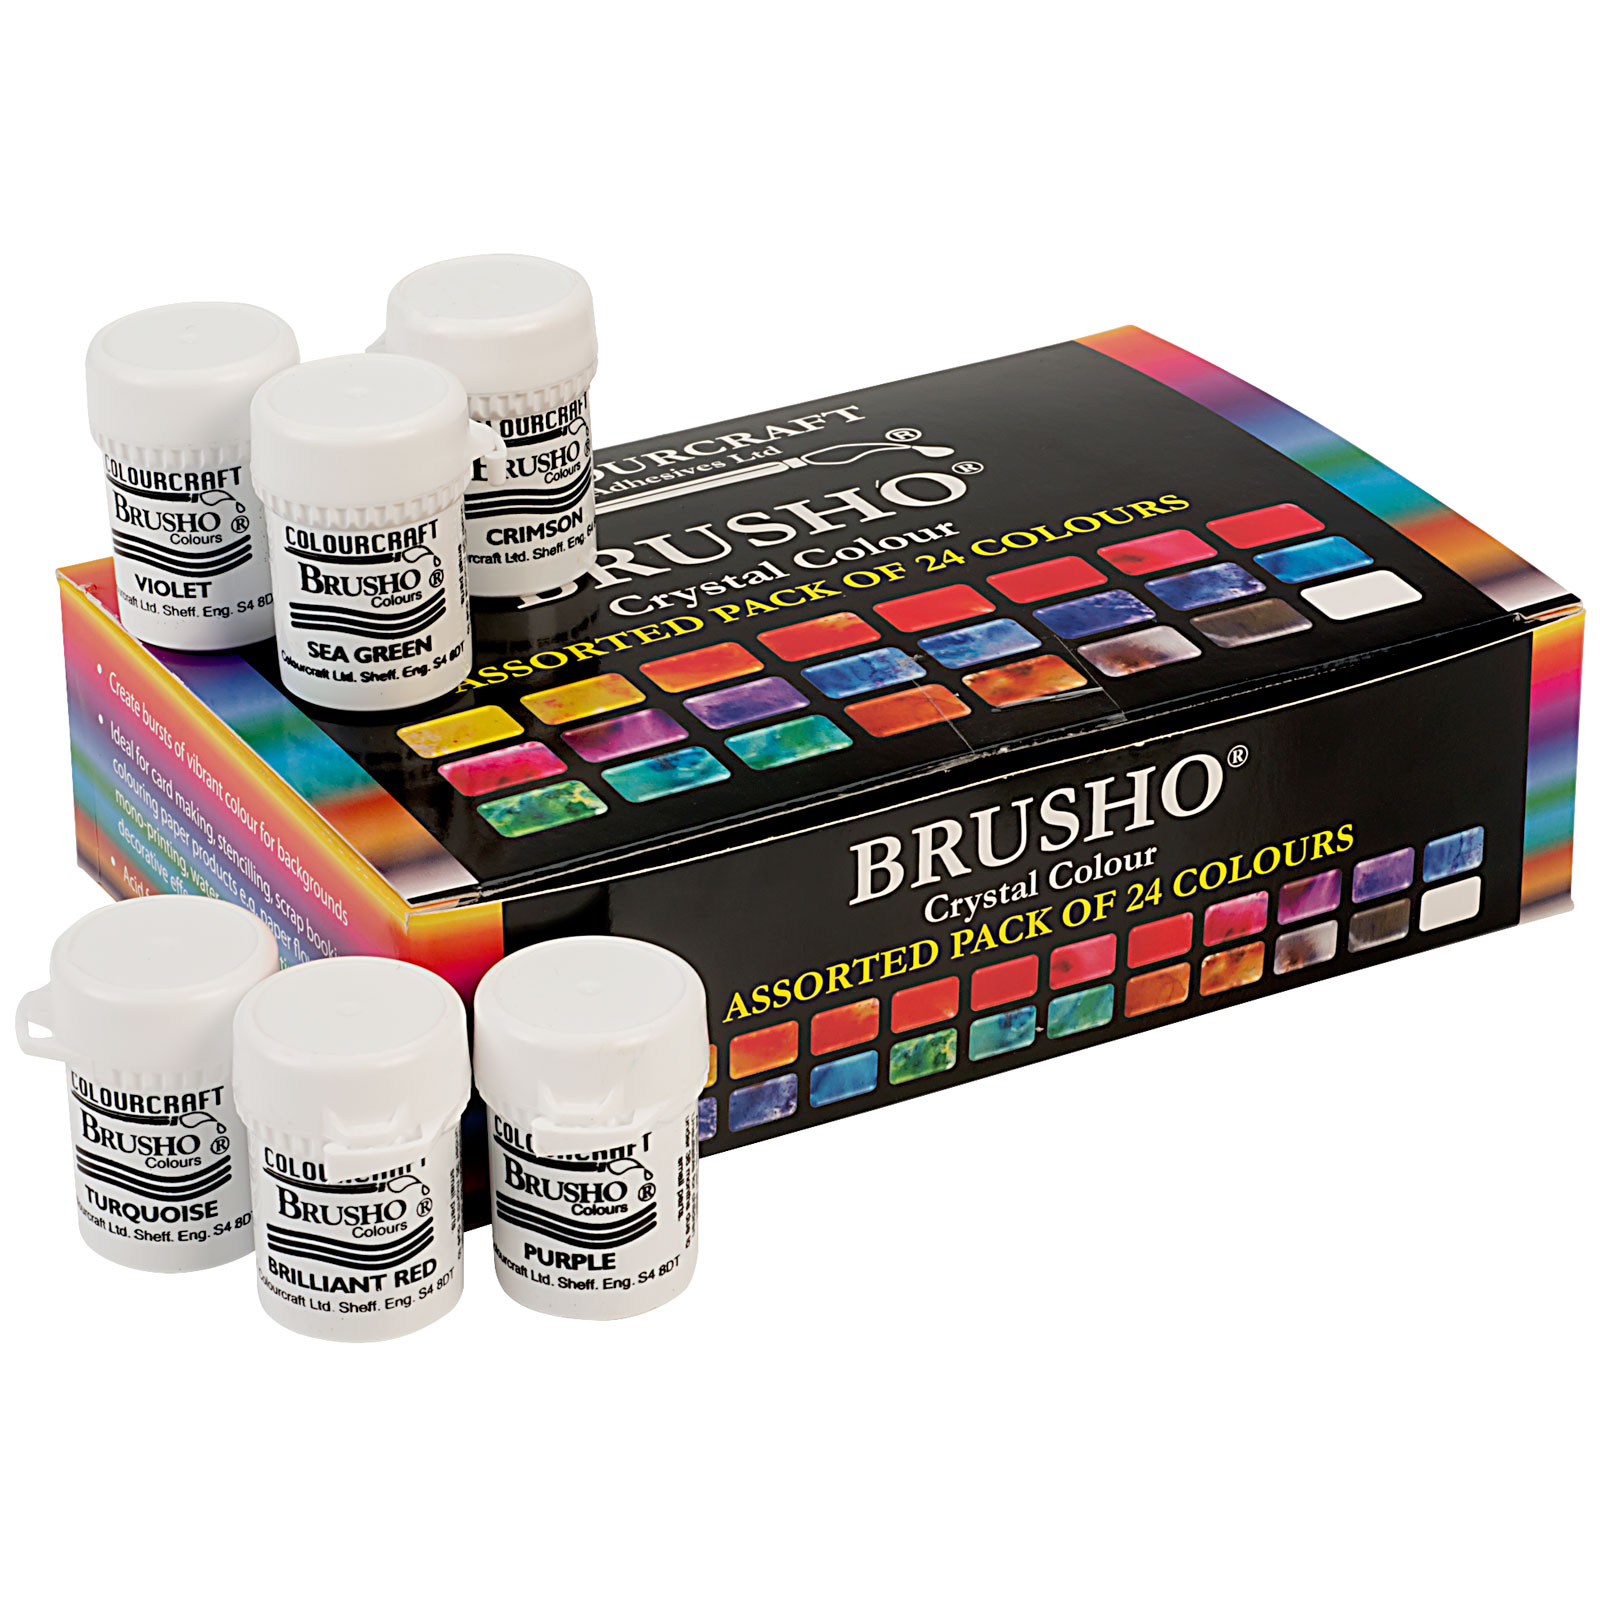 Colourcraft Brusho Crystal Colour Pigment Powder 15g Pots -  UK